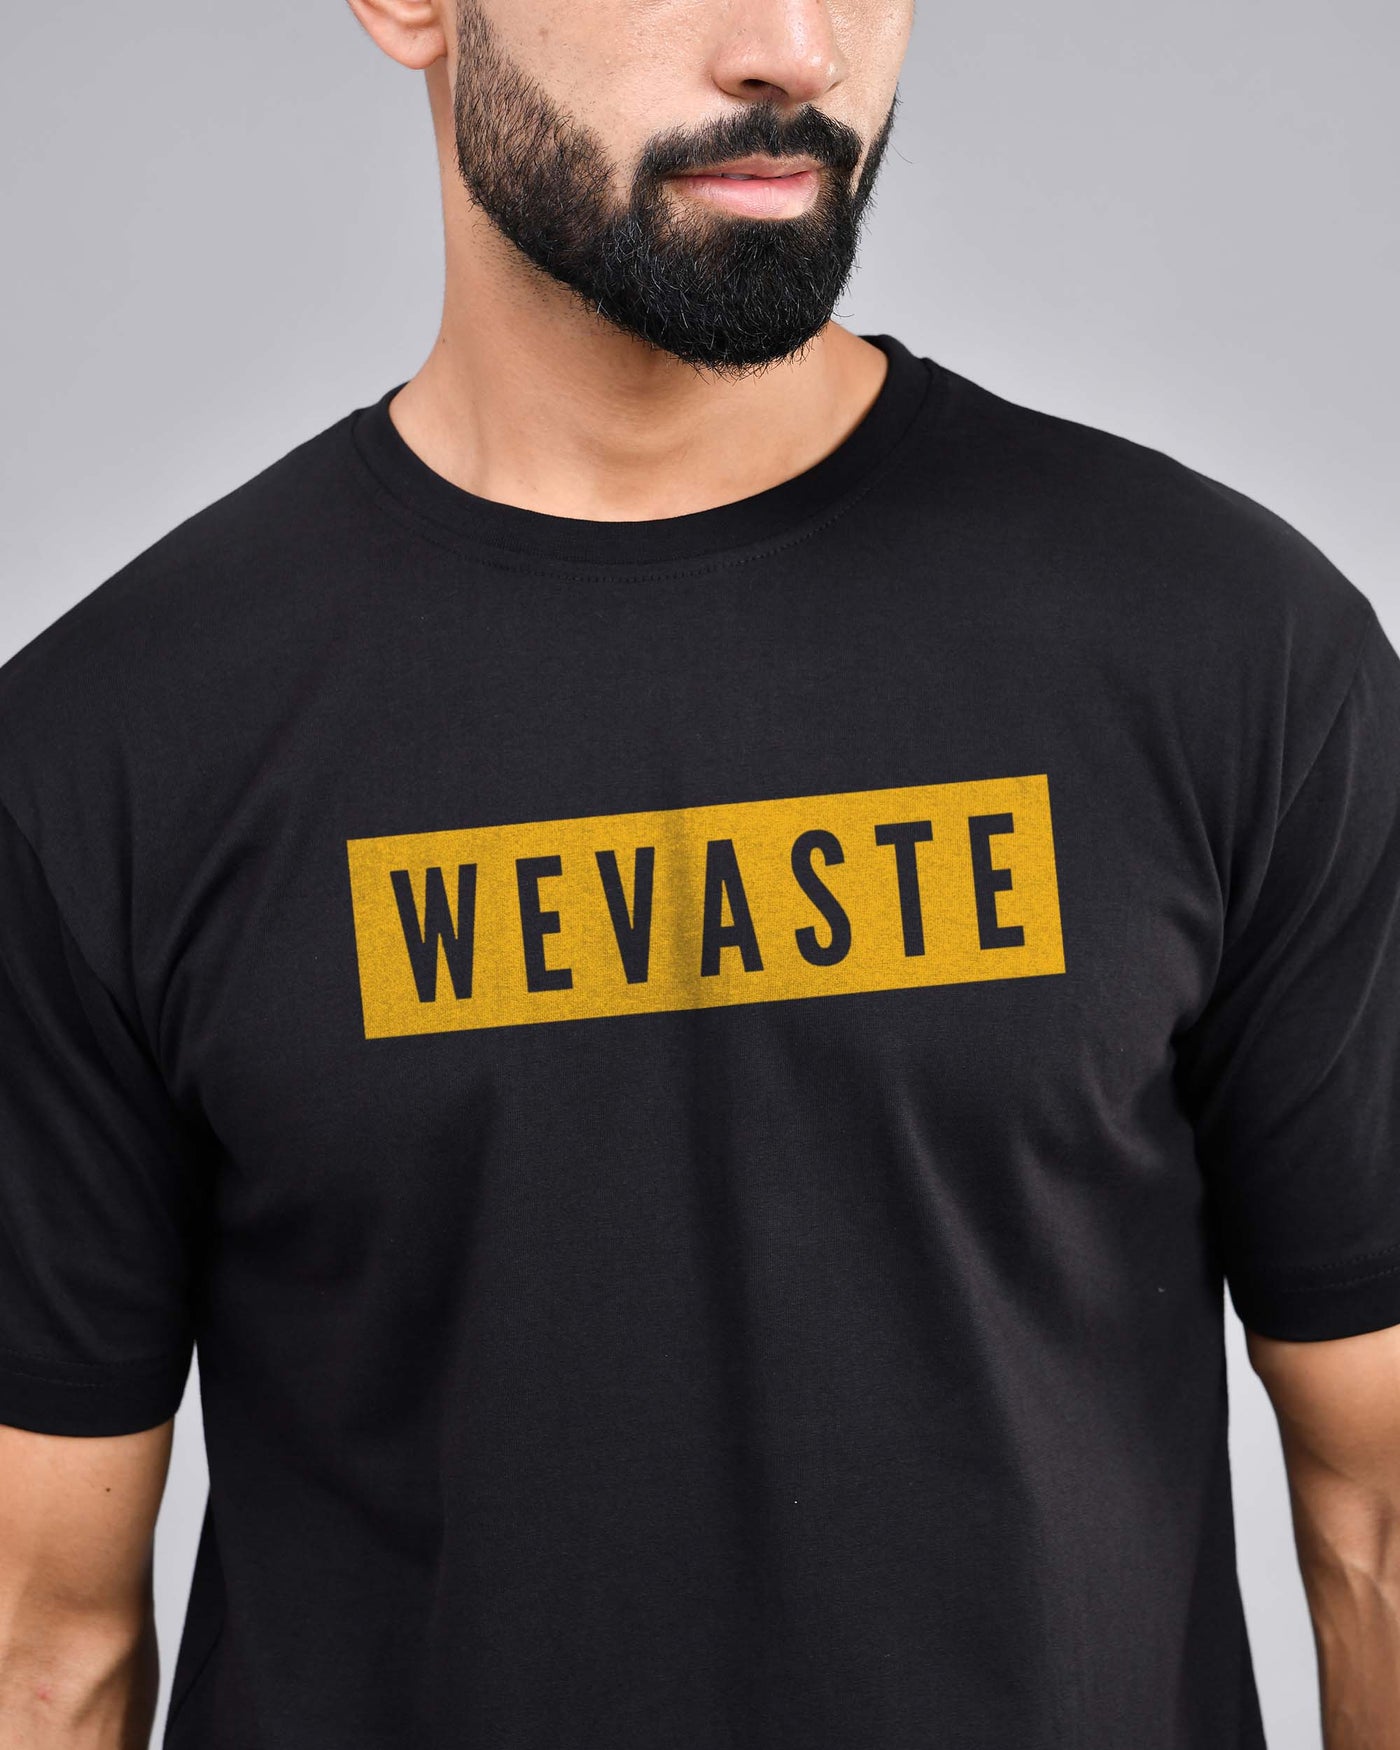 Men's Black Wevaste Print T-Shirt